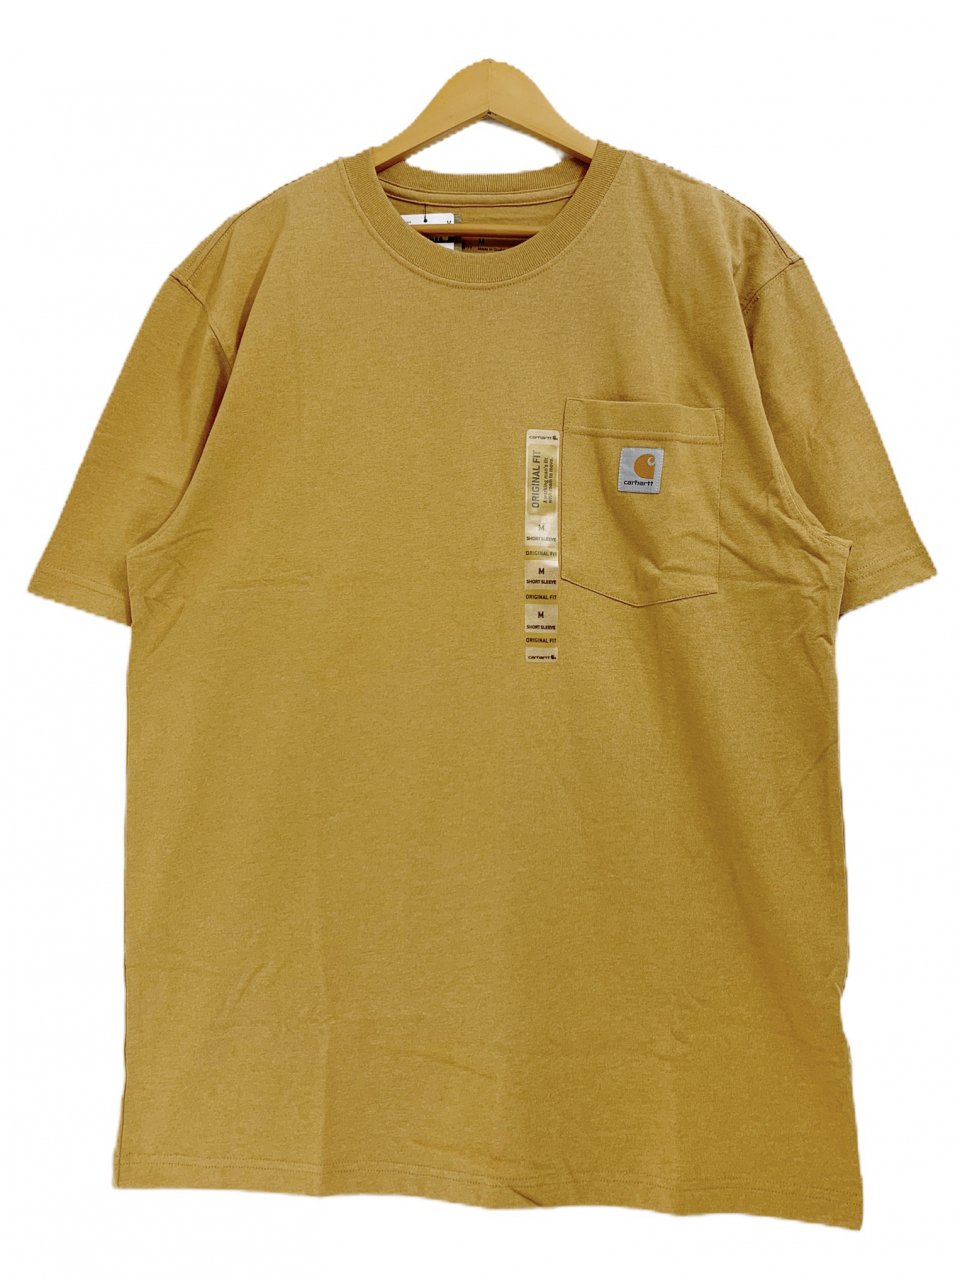 新品 US企画 Carhartt Pocket S/S Tee (YELLOWSTONE HEATHER) カーハート ポケット付 半袖 Tシャツ  ポケT 無地T 黄色 イエロー - NEWJOKE ONLINE STORE